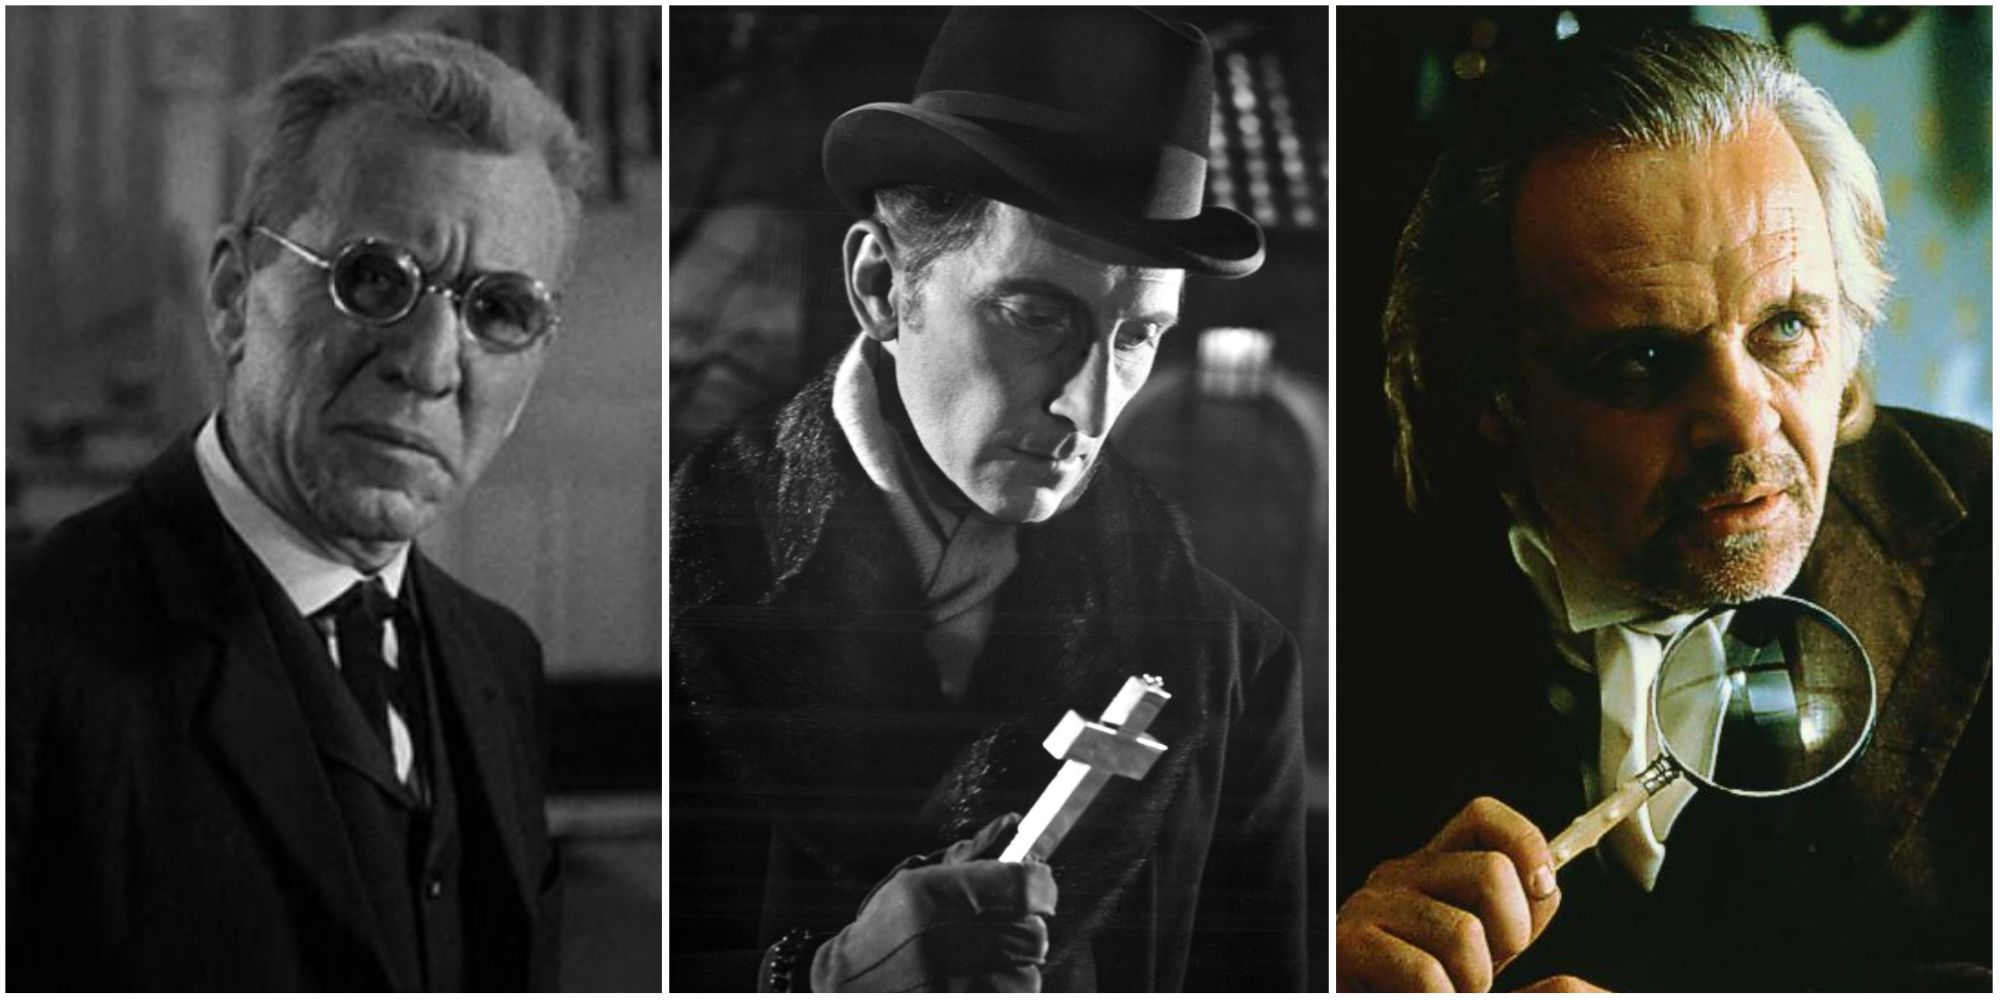 Abraham Van Helsing in Dracula 1931, 1958, and 1992